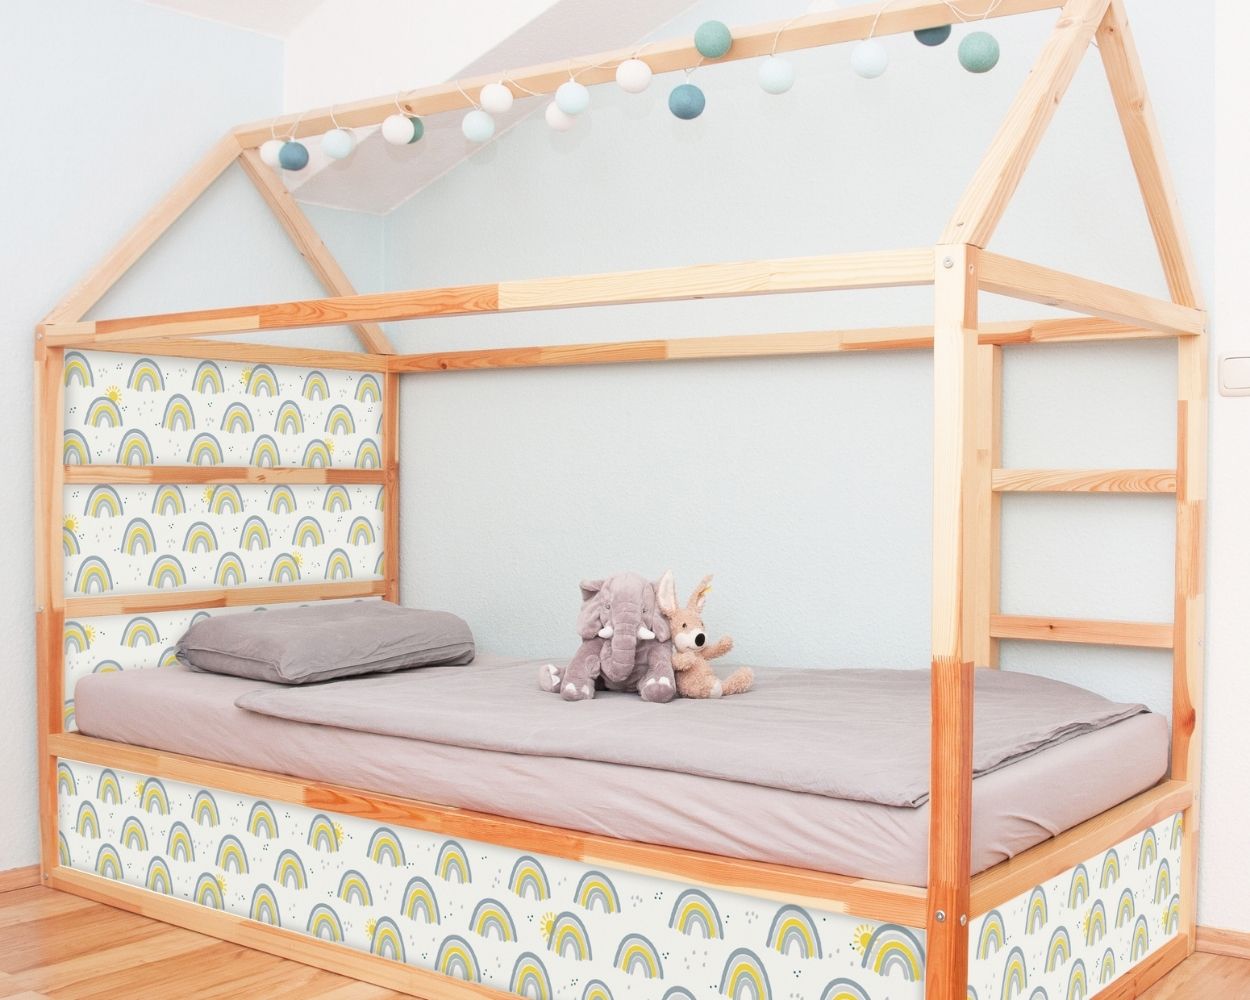 IKEA Hausbett: Die besten Ideen zum Schlafen unterm Dach